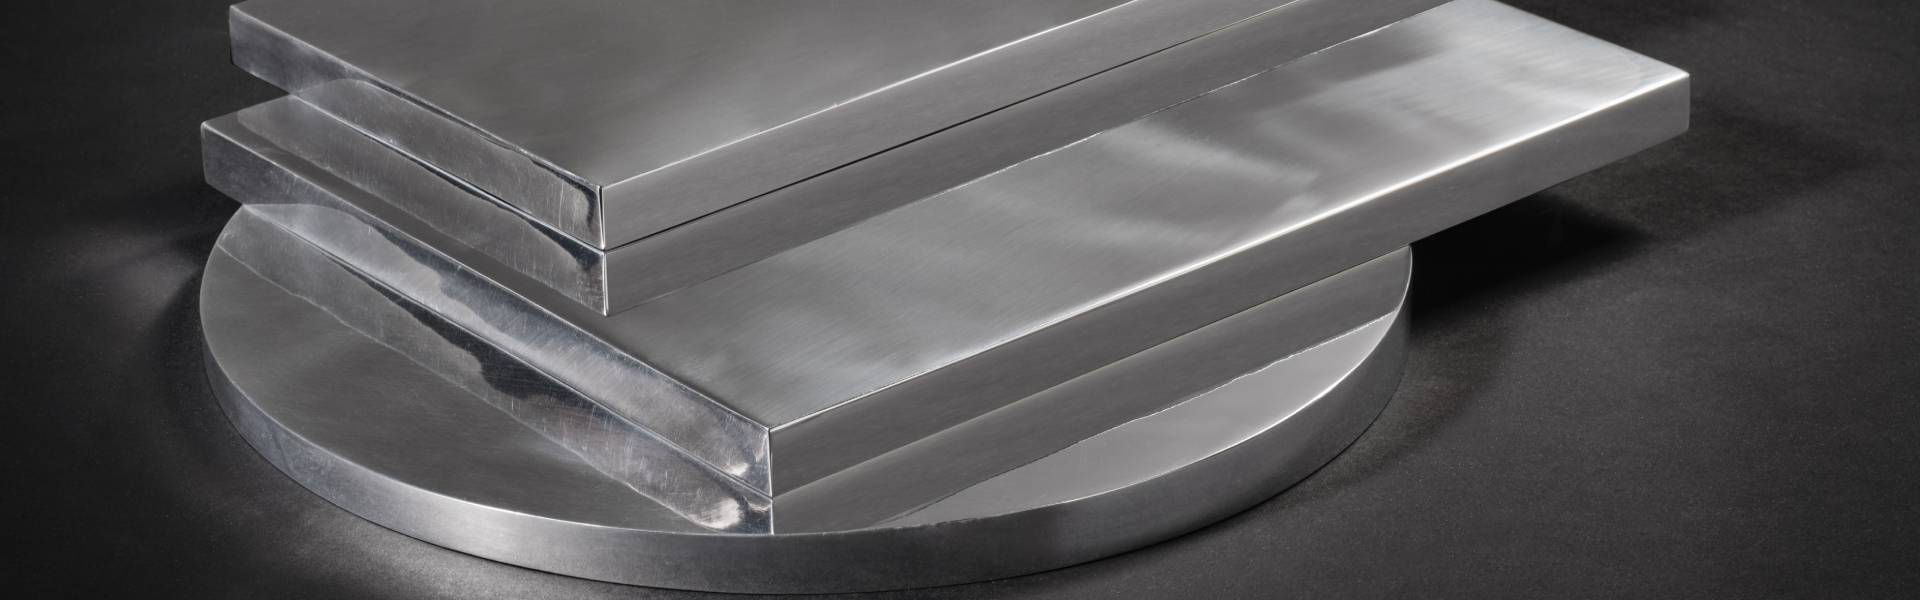 Piastre e Placche - Vendita alluminio: profili, tubi, lastre e